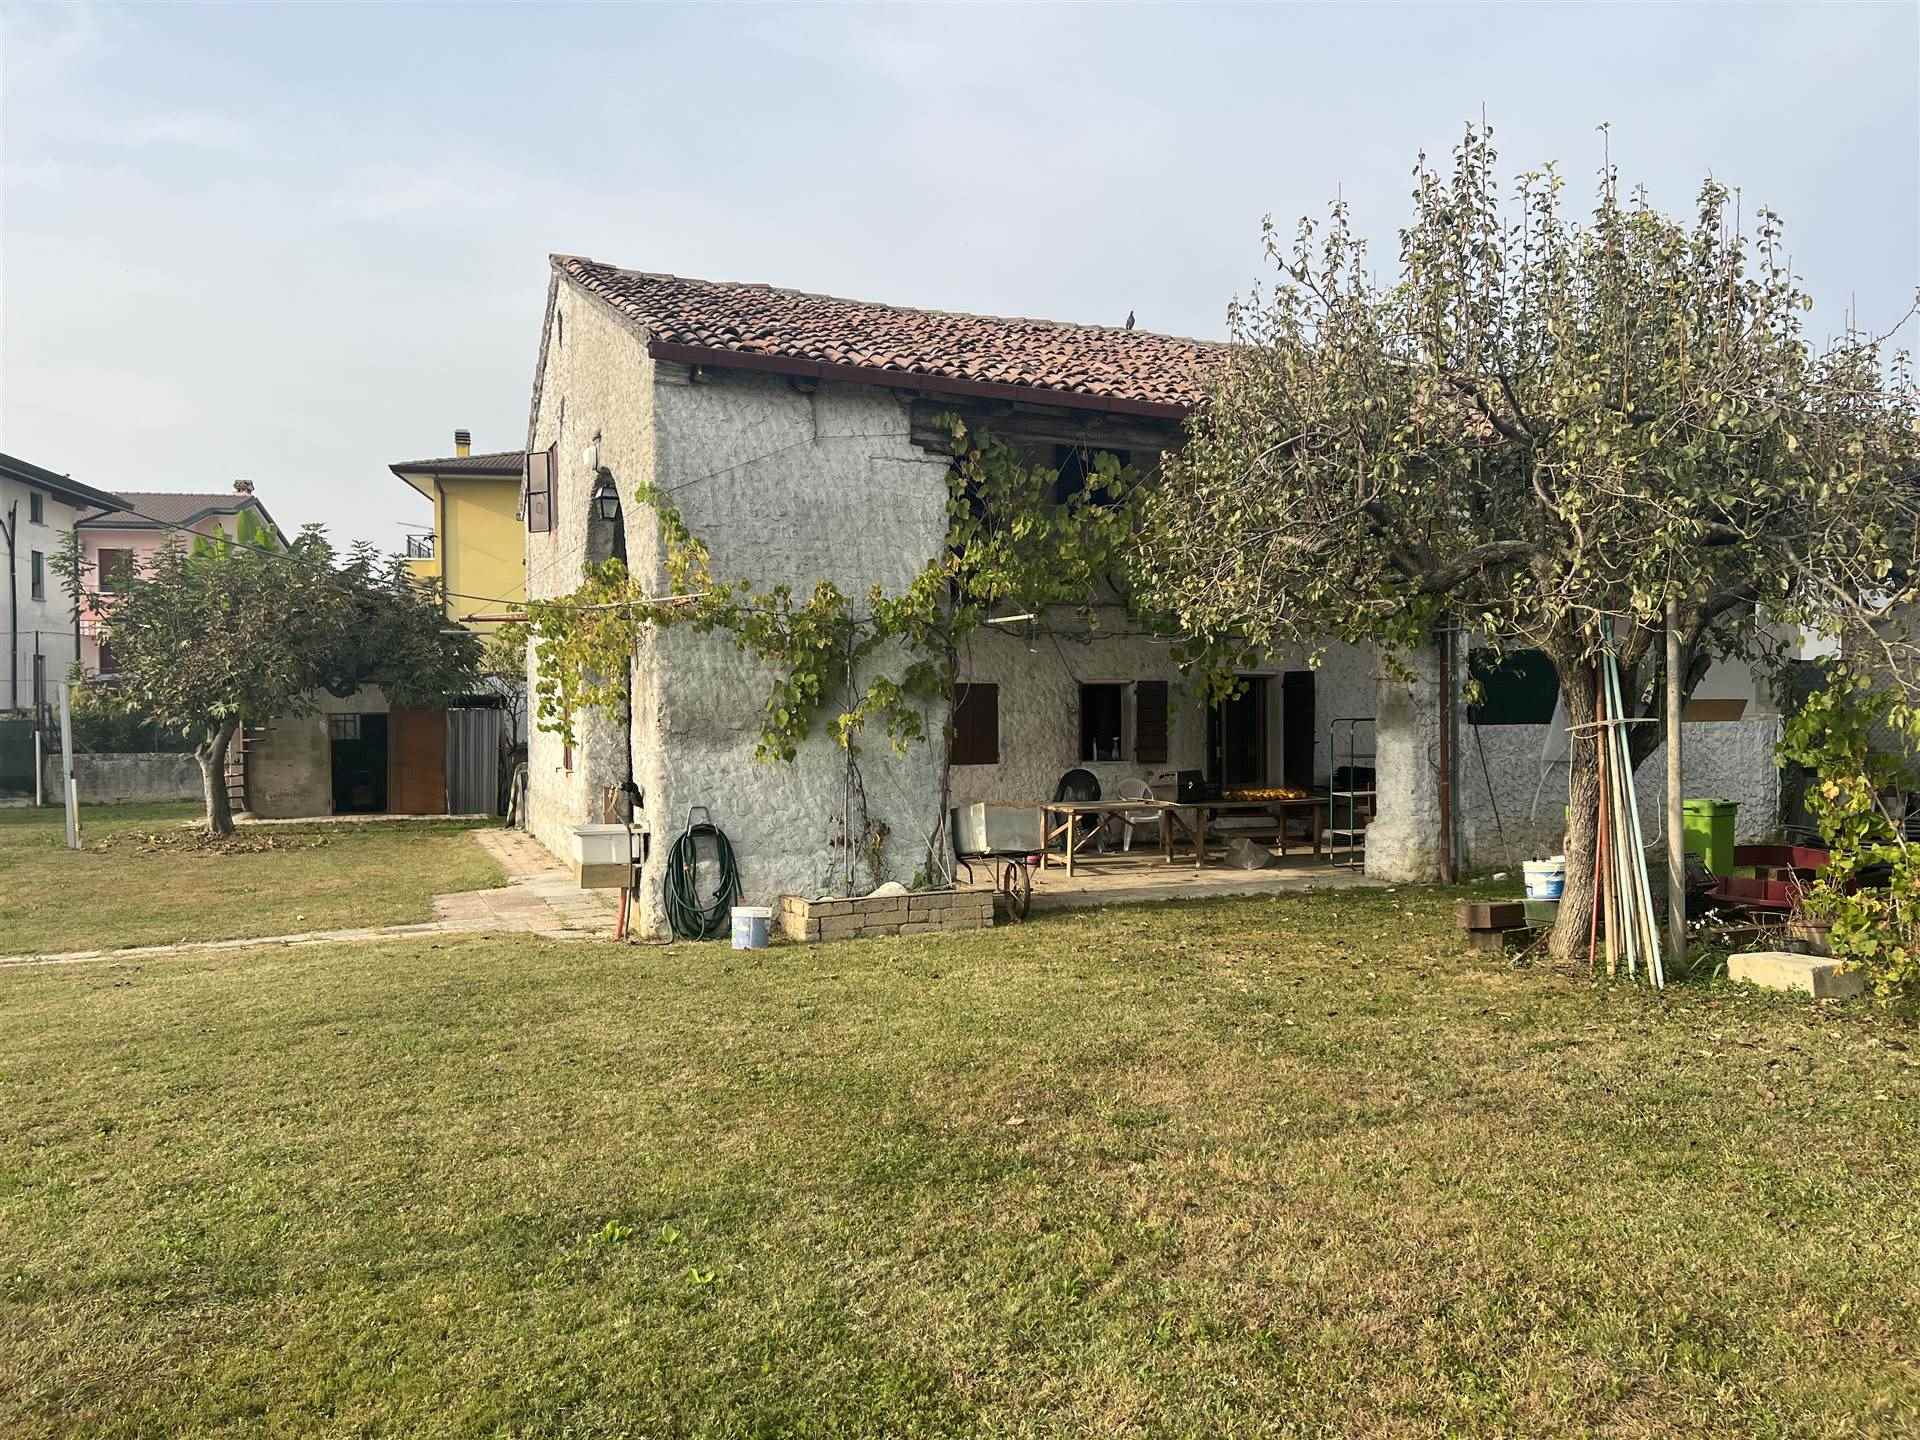 Rustico / Casale in vendita a Villafranca Padovana, 5 locali, prezzo € 220.000 | PortaleAgenzieImmobiliari.it